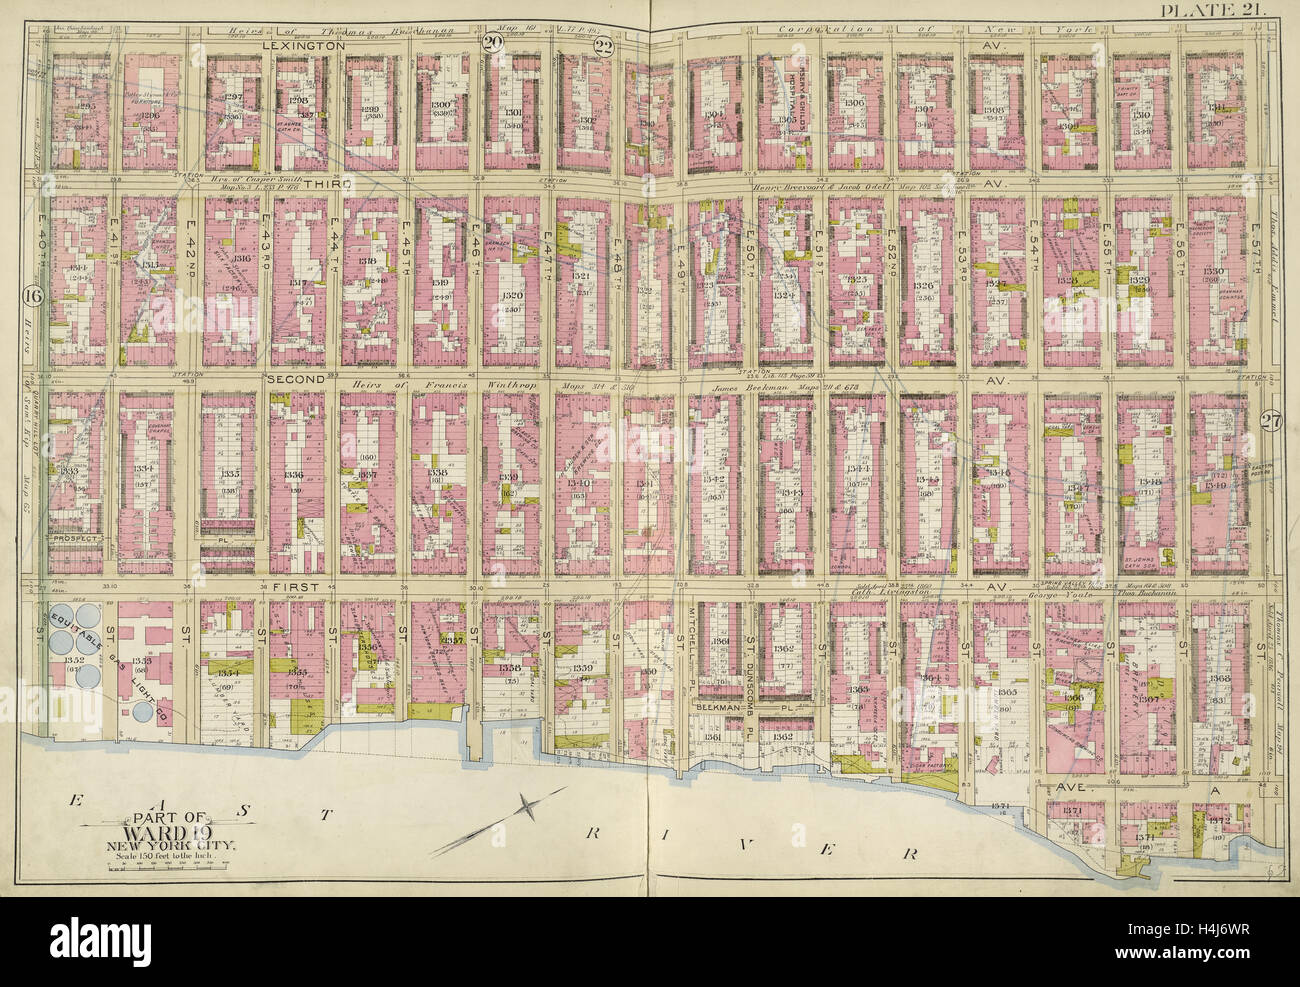 Manhattan, placa de doble página nº 21 mapa delimitado por Lexington Ave., E. 57th St., East River, E. 40th St., Nueva York, EE.UU. Foto de stock